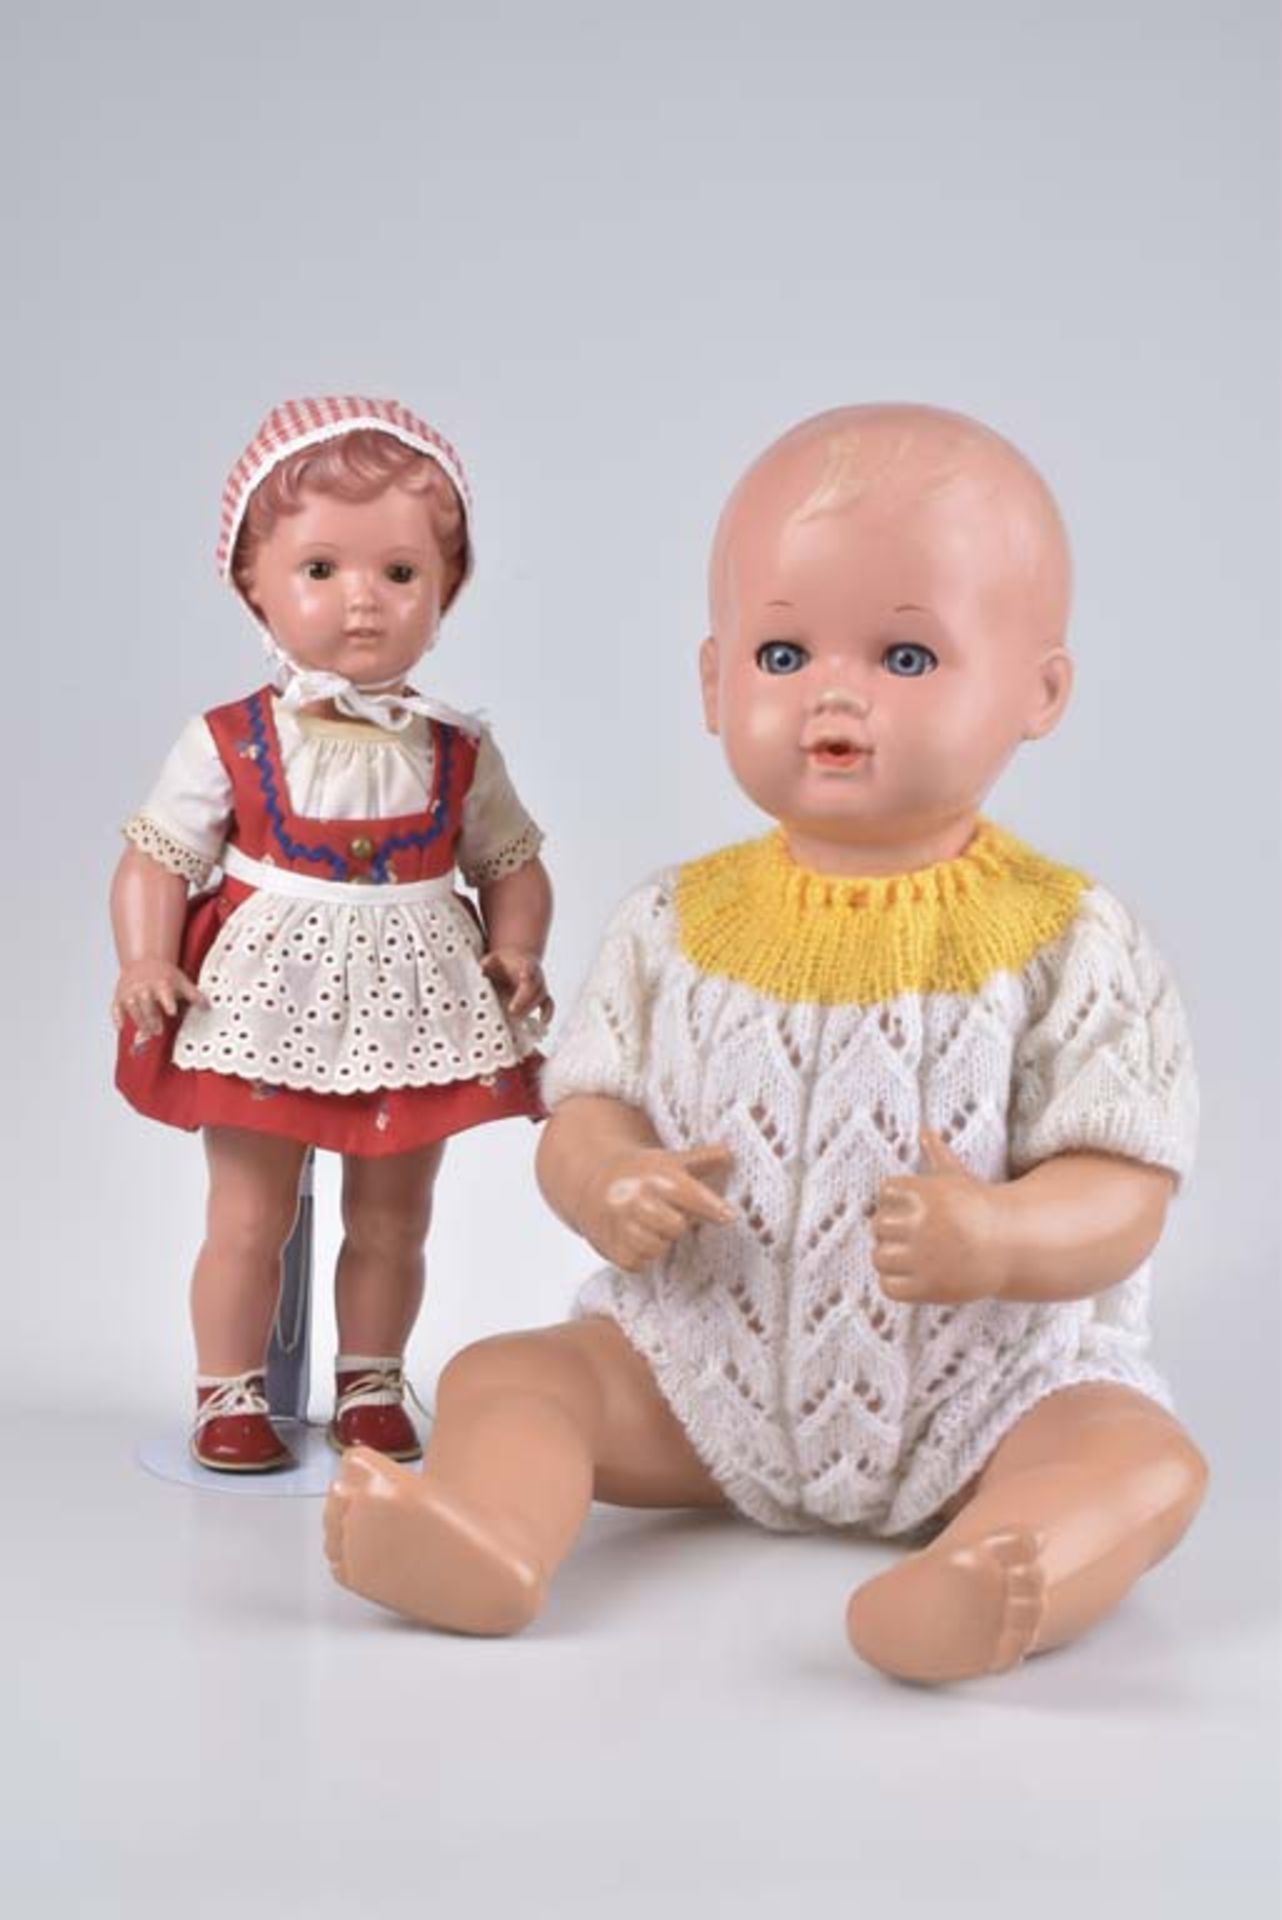 SCHILDKRÖT Mädchen + Puppen-Baby Mädchen, gem. T 40, Kurbelkopf, feste braune Augen